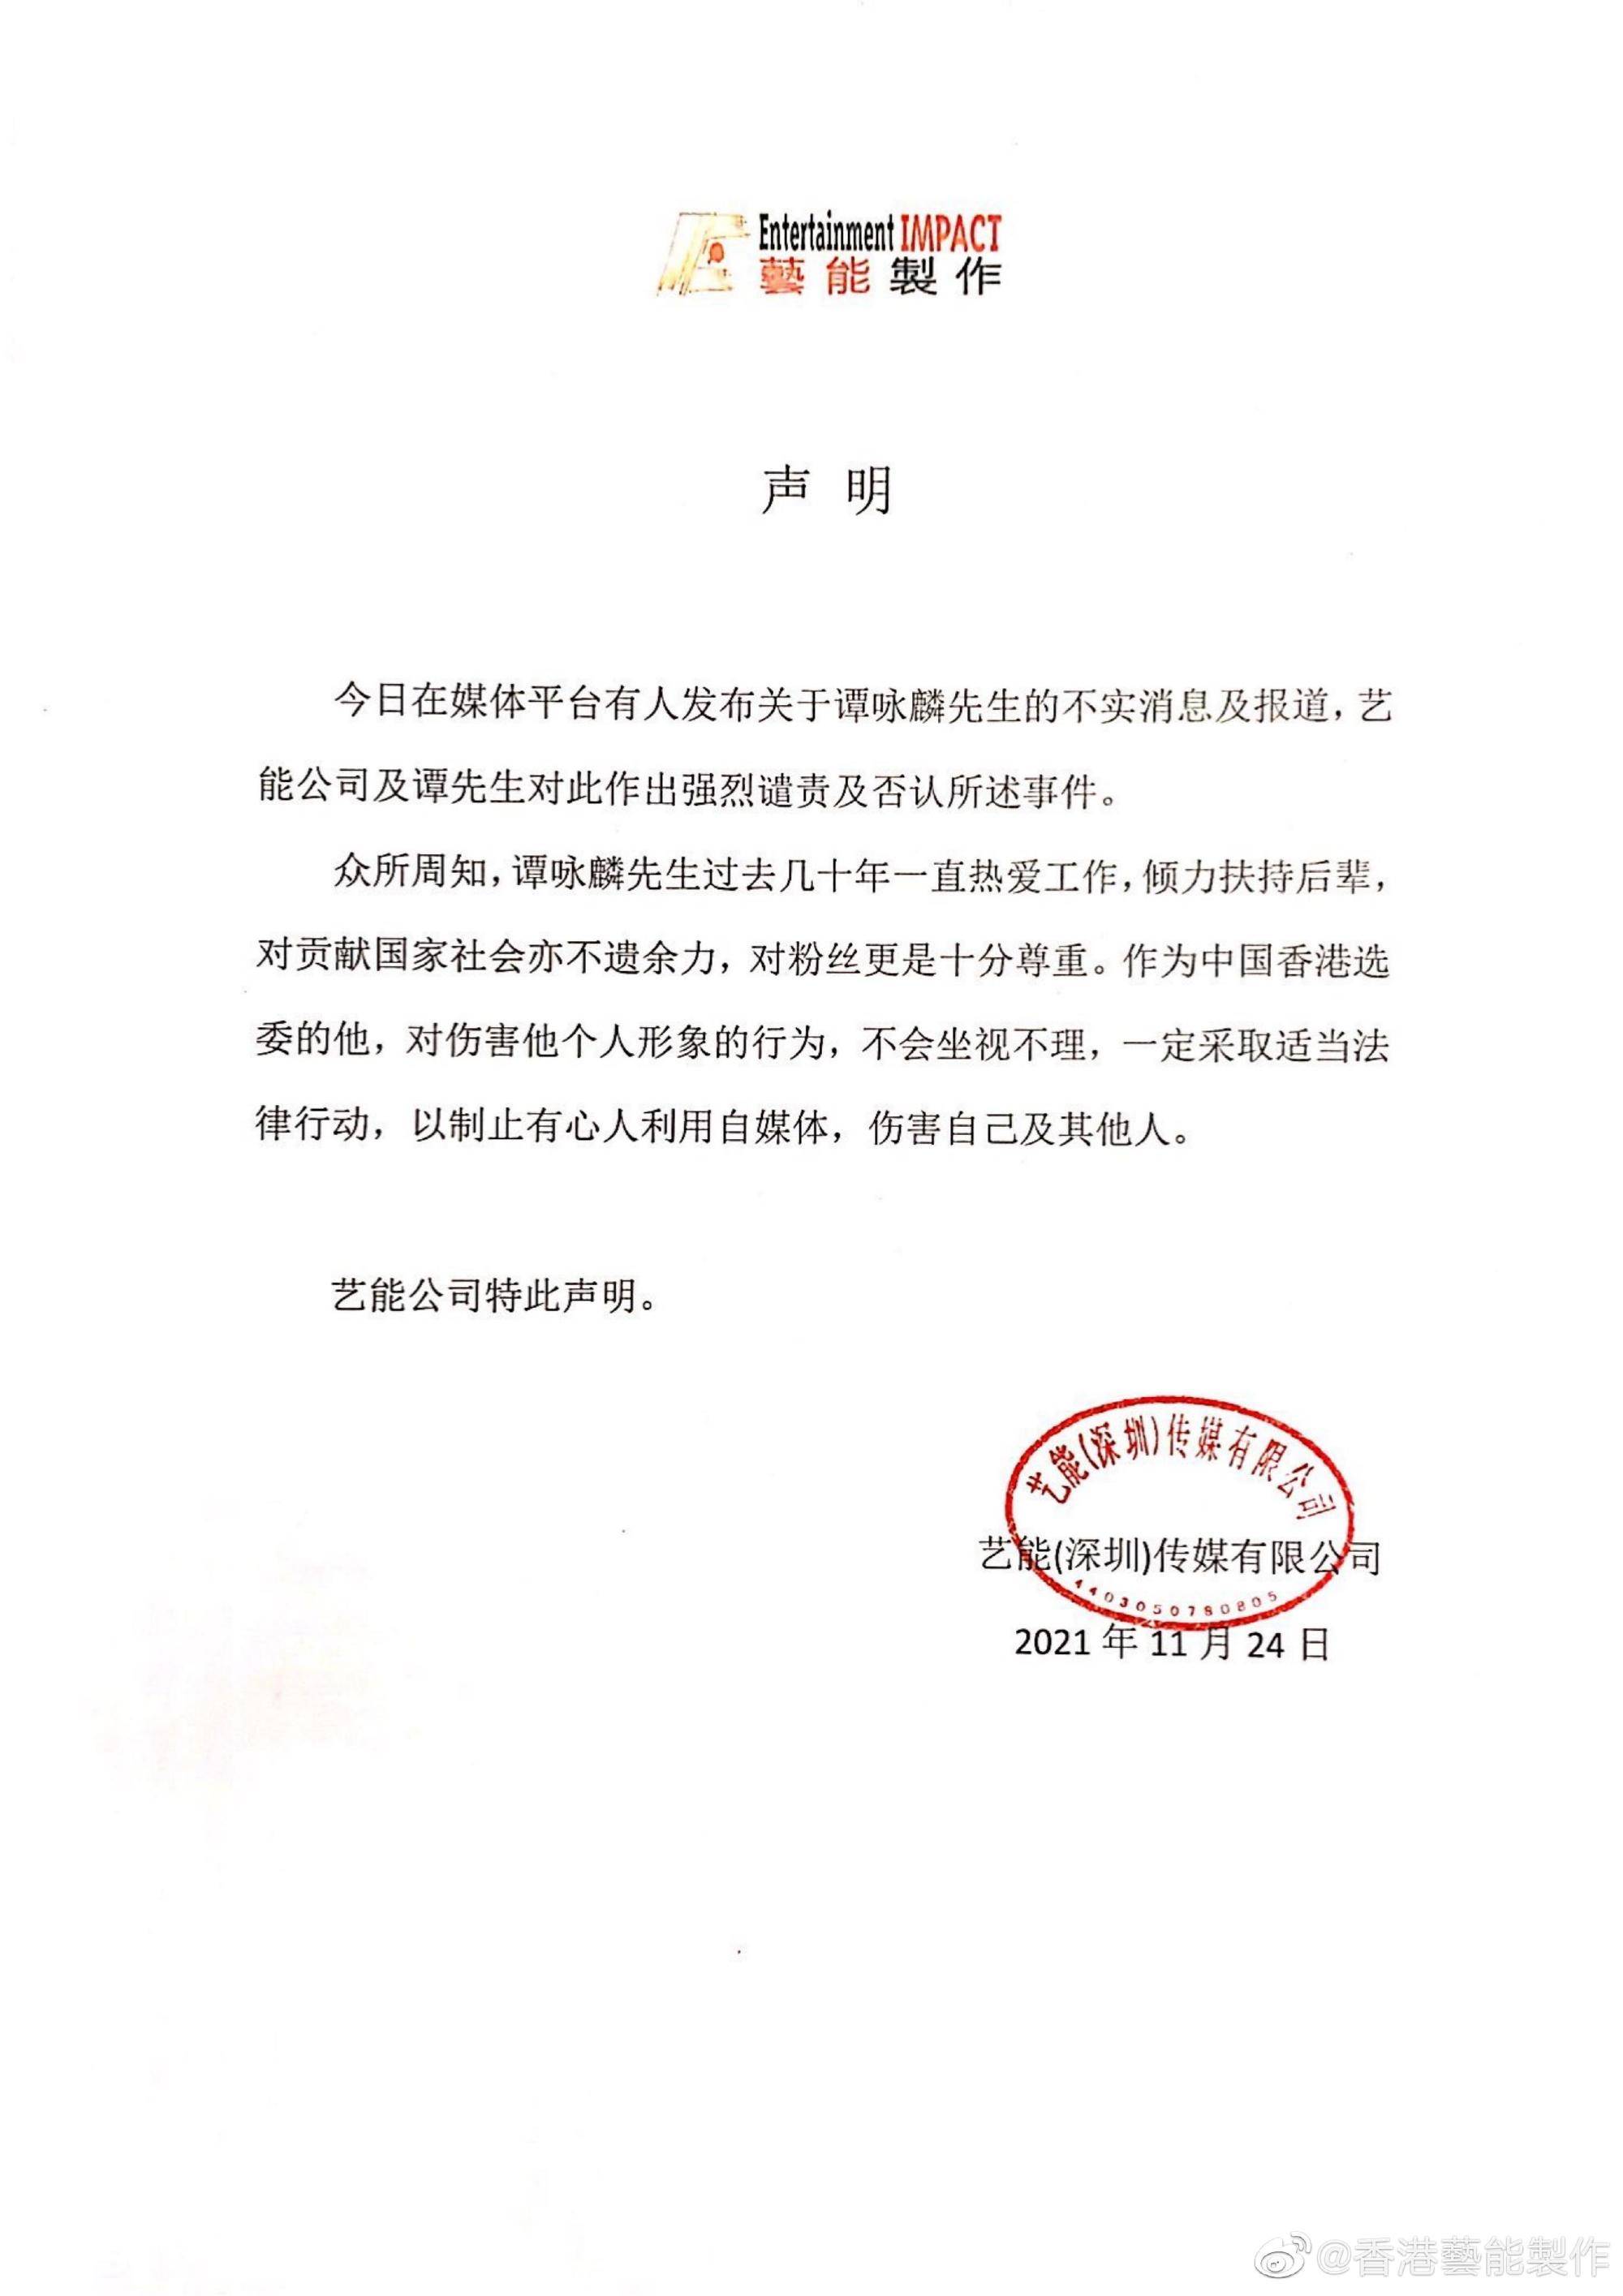 香港藝能製作駁斥微博網友對譚詠麟指控